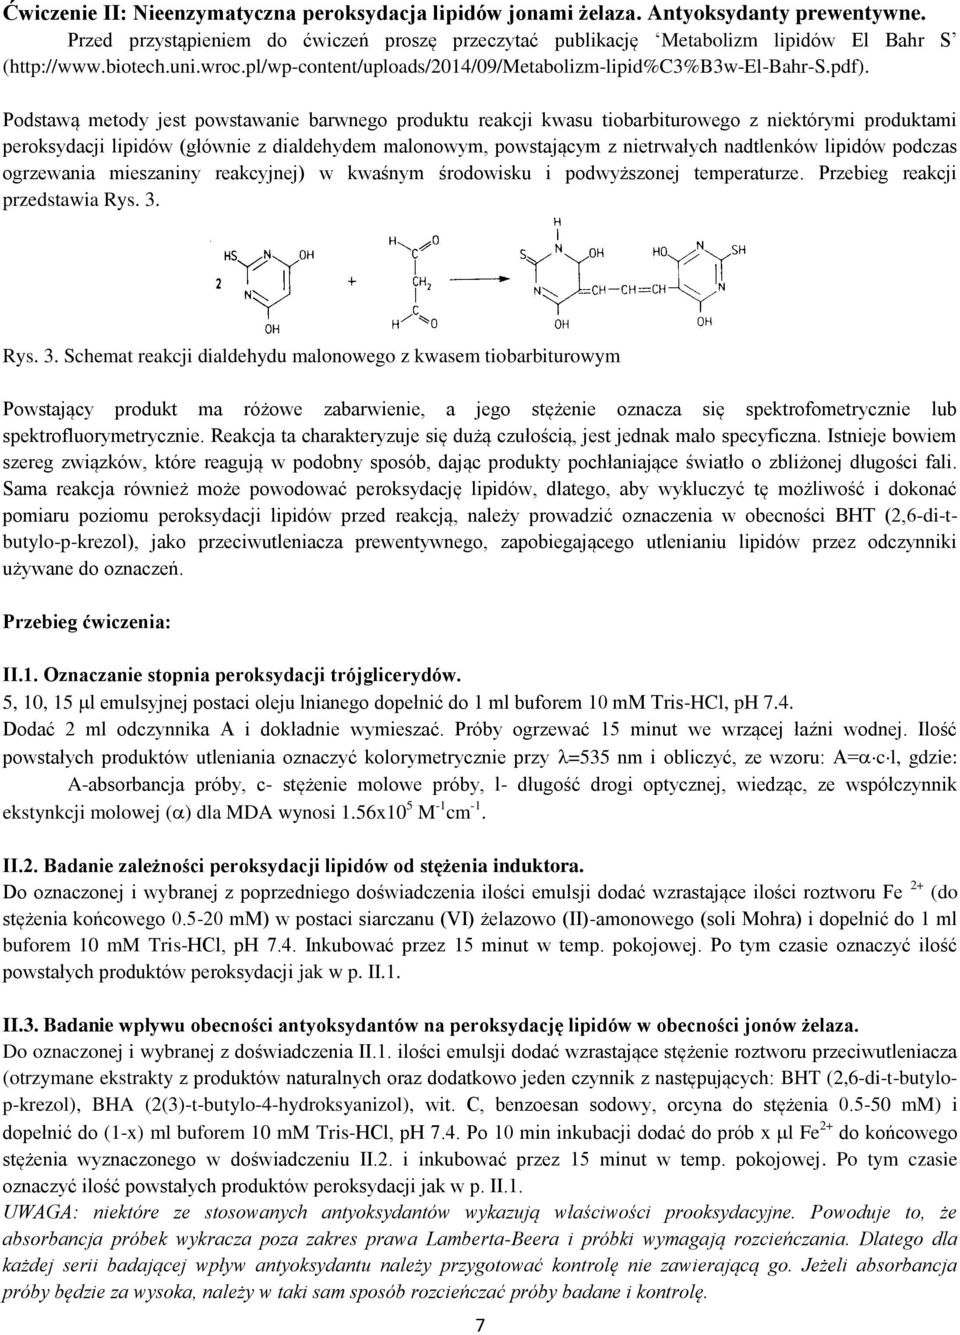 Podstawą metody jest powstawanie barwnego produktu reakcji kwasu tiobarbiturowego z niektórymi produktami peroksydacji lipidów (głównie z dialdehydem malonowym, powstającym z nietrwałych nadtlenków